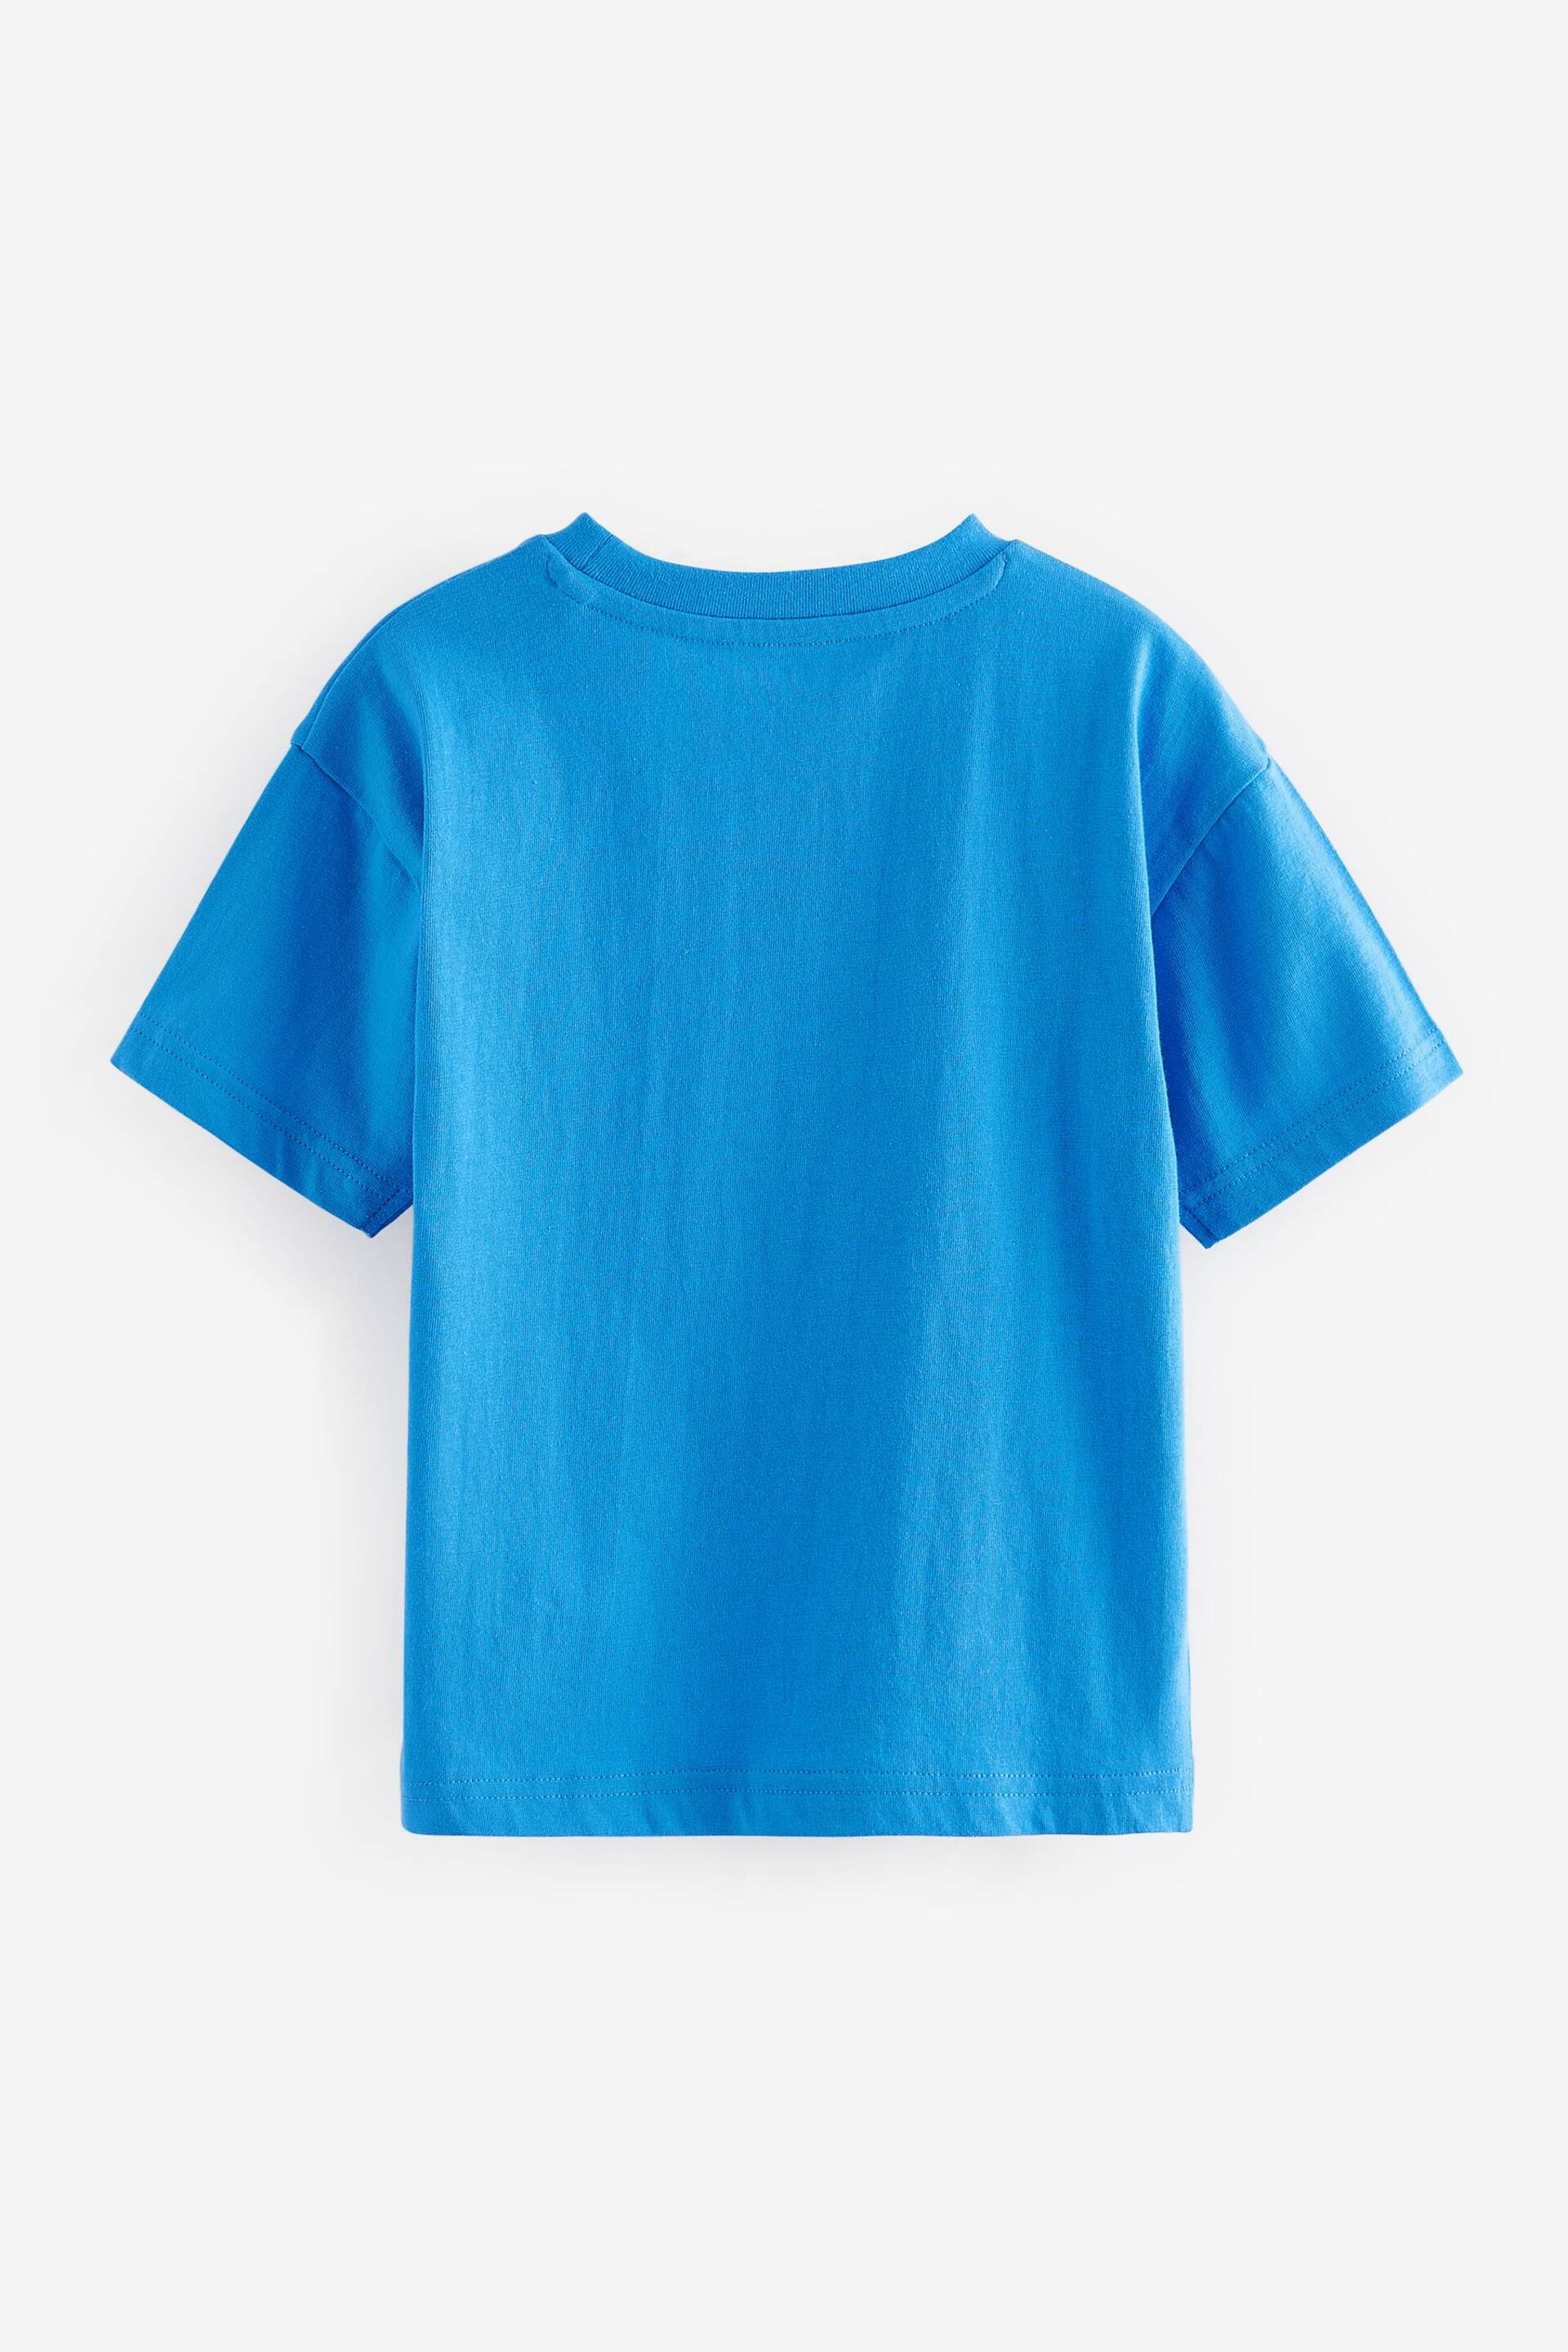 White/Grey/Blue/Orange Short Sleeve T-Shirt Set 4 Pack (3mths-7yrs) - Image 6 of 7